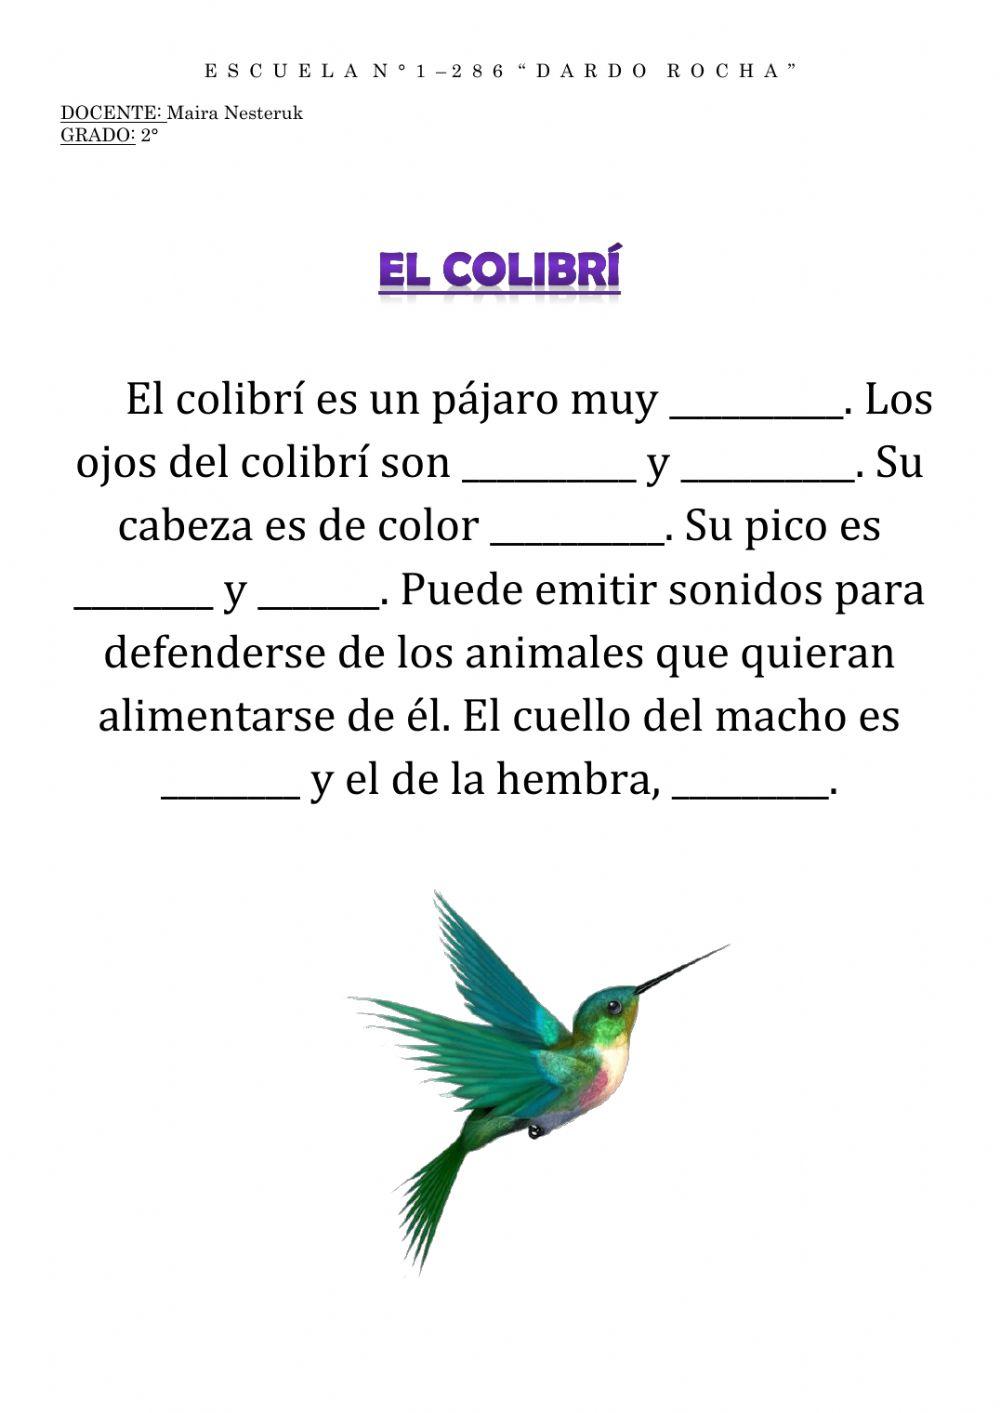 El colibrí - adjetivos